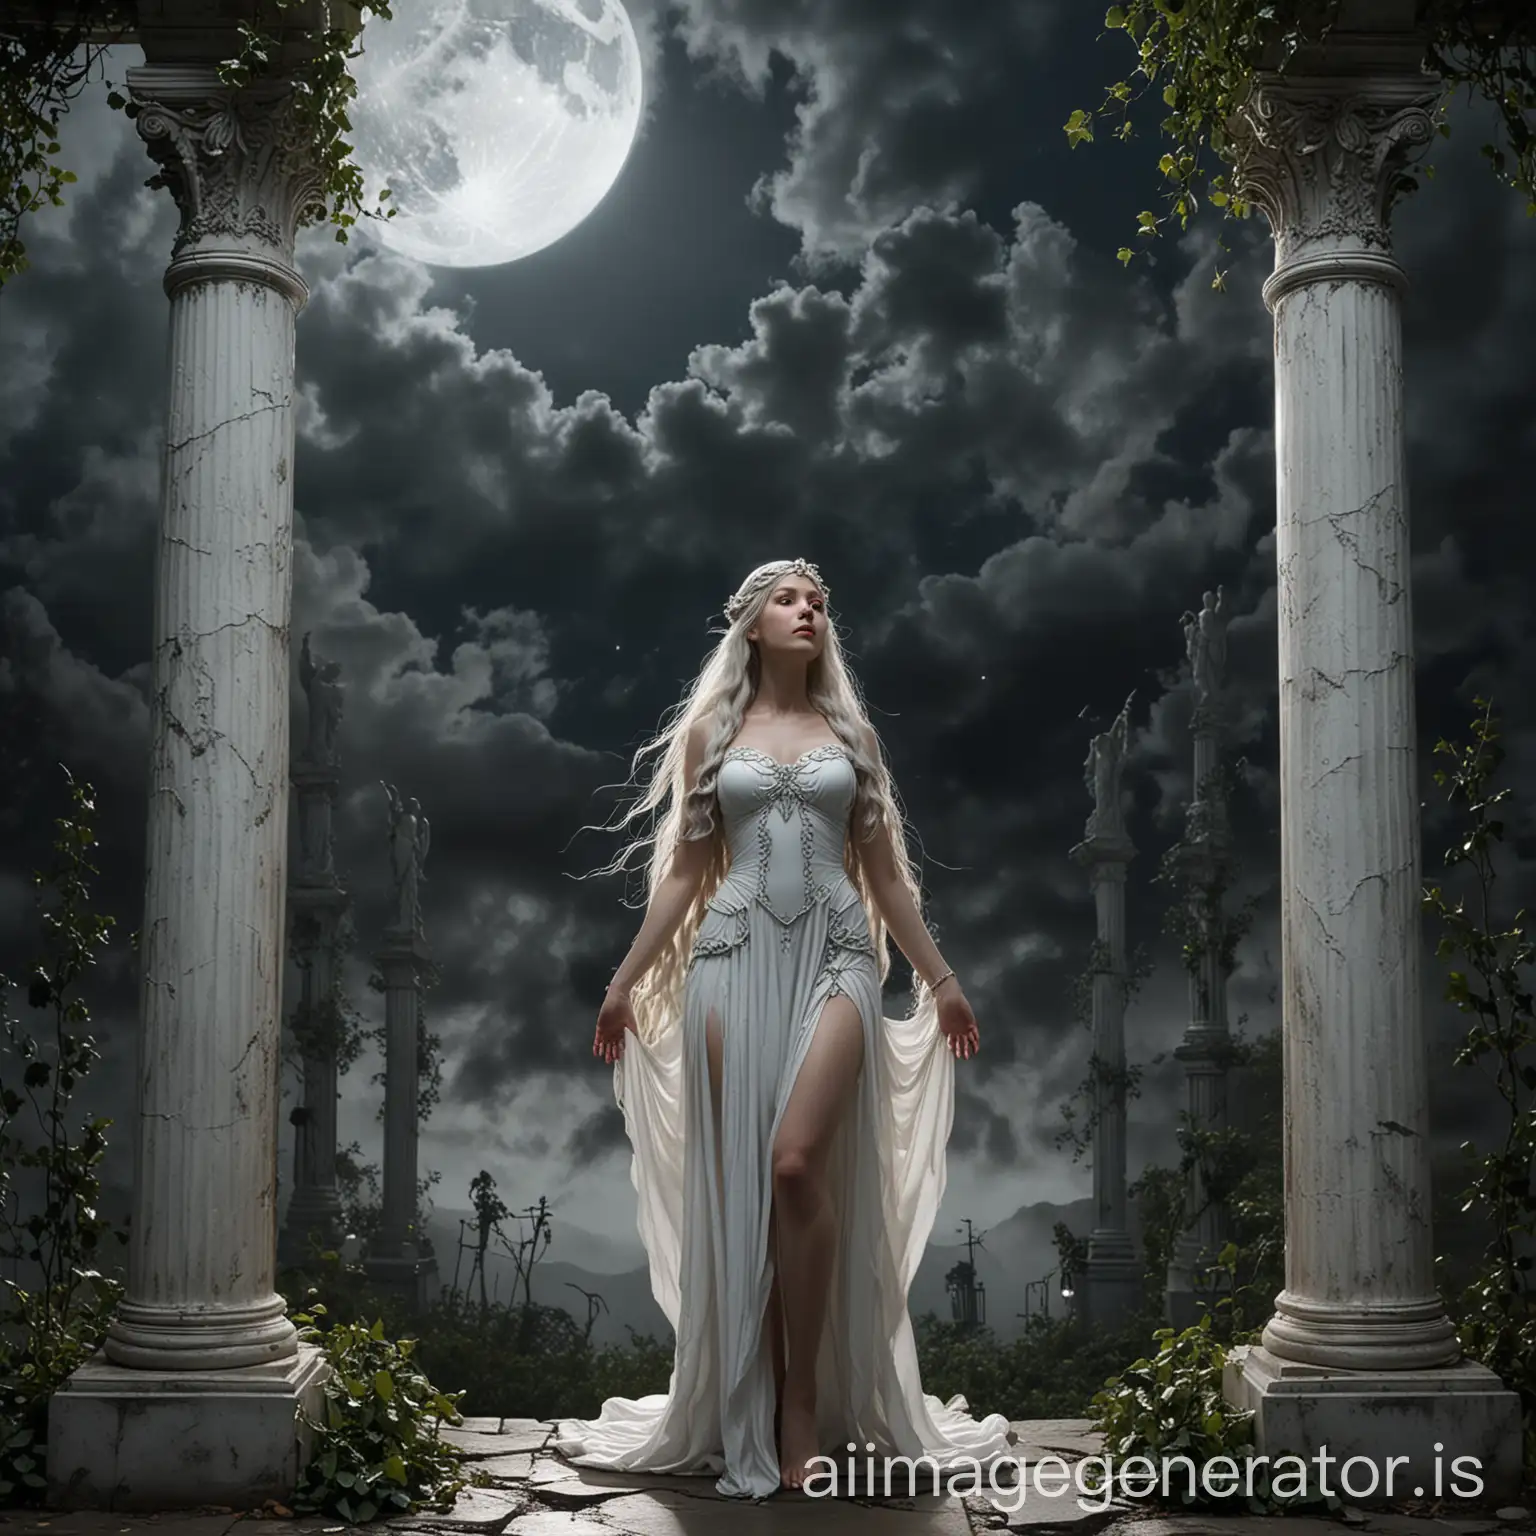 Elven-Queen-Galadriel-Standing-Under-Crescent-Moon-in-Ancient-Ruins